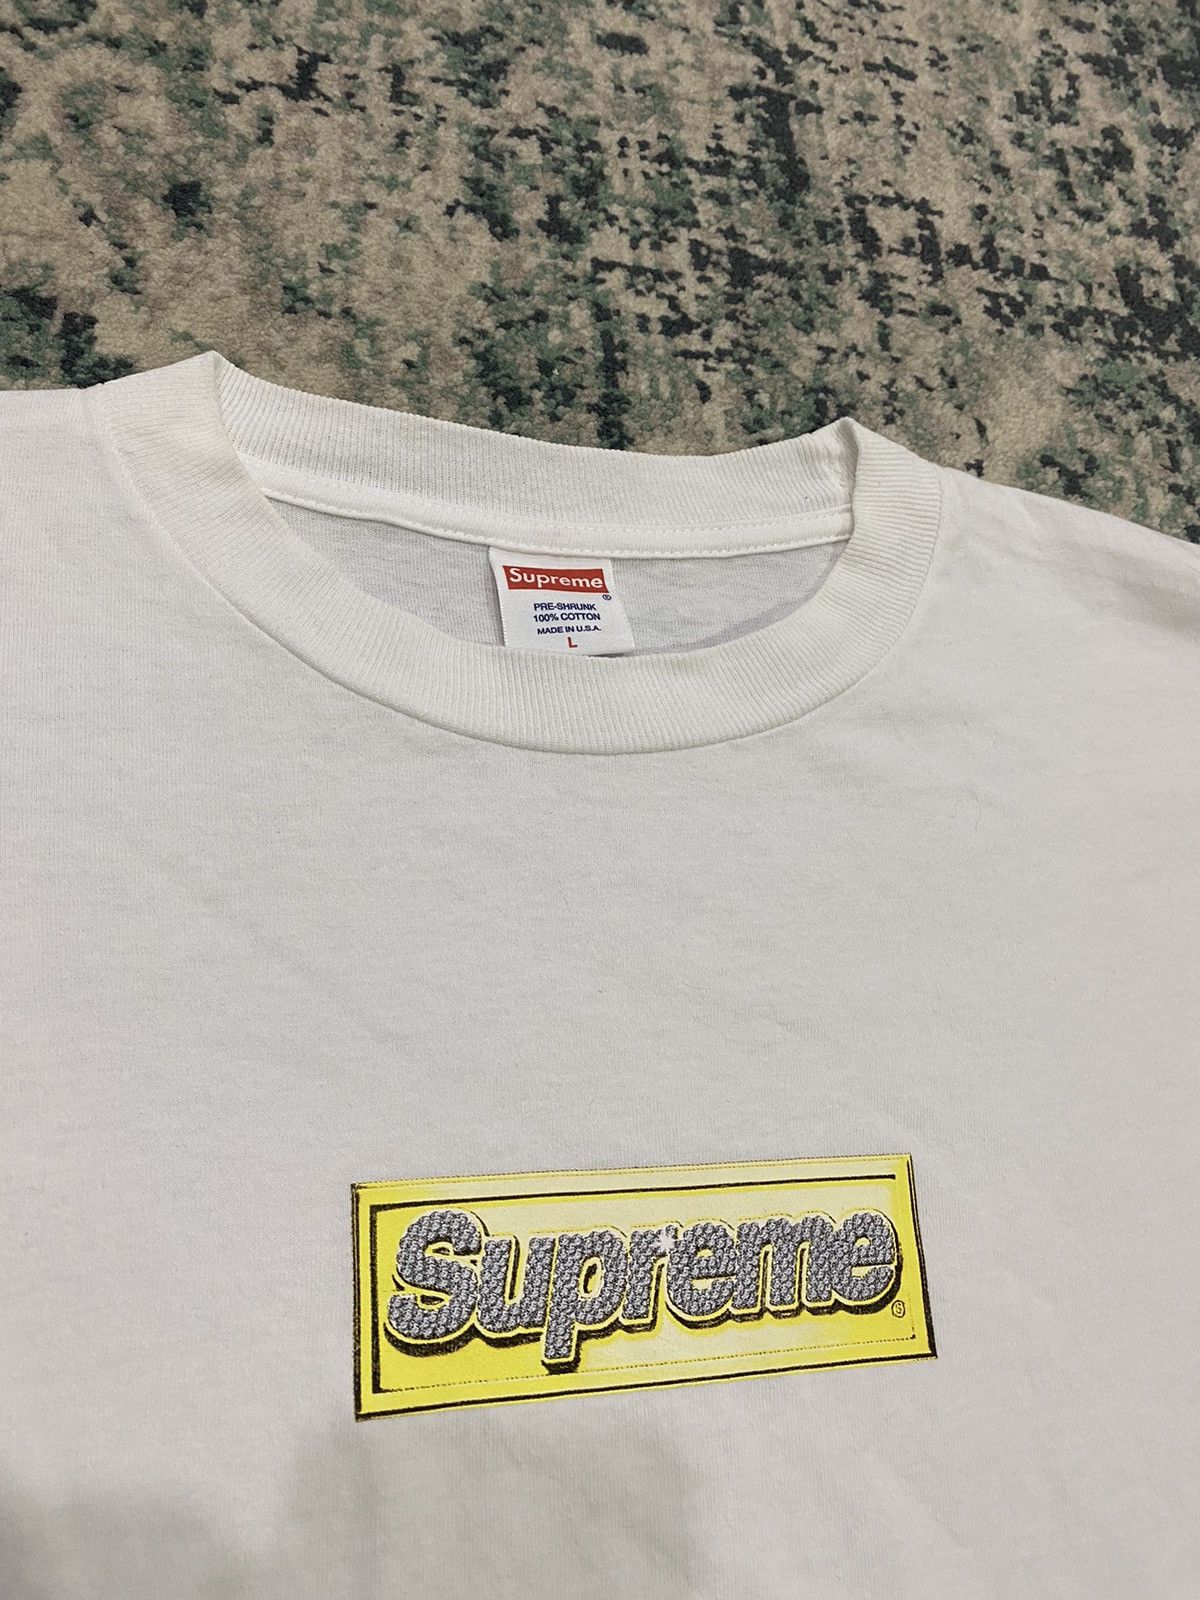 Supreme S/S13 Bling Box Logo T-Shirt OG - 7